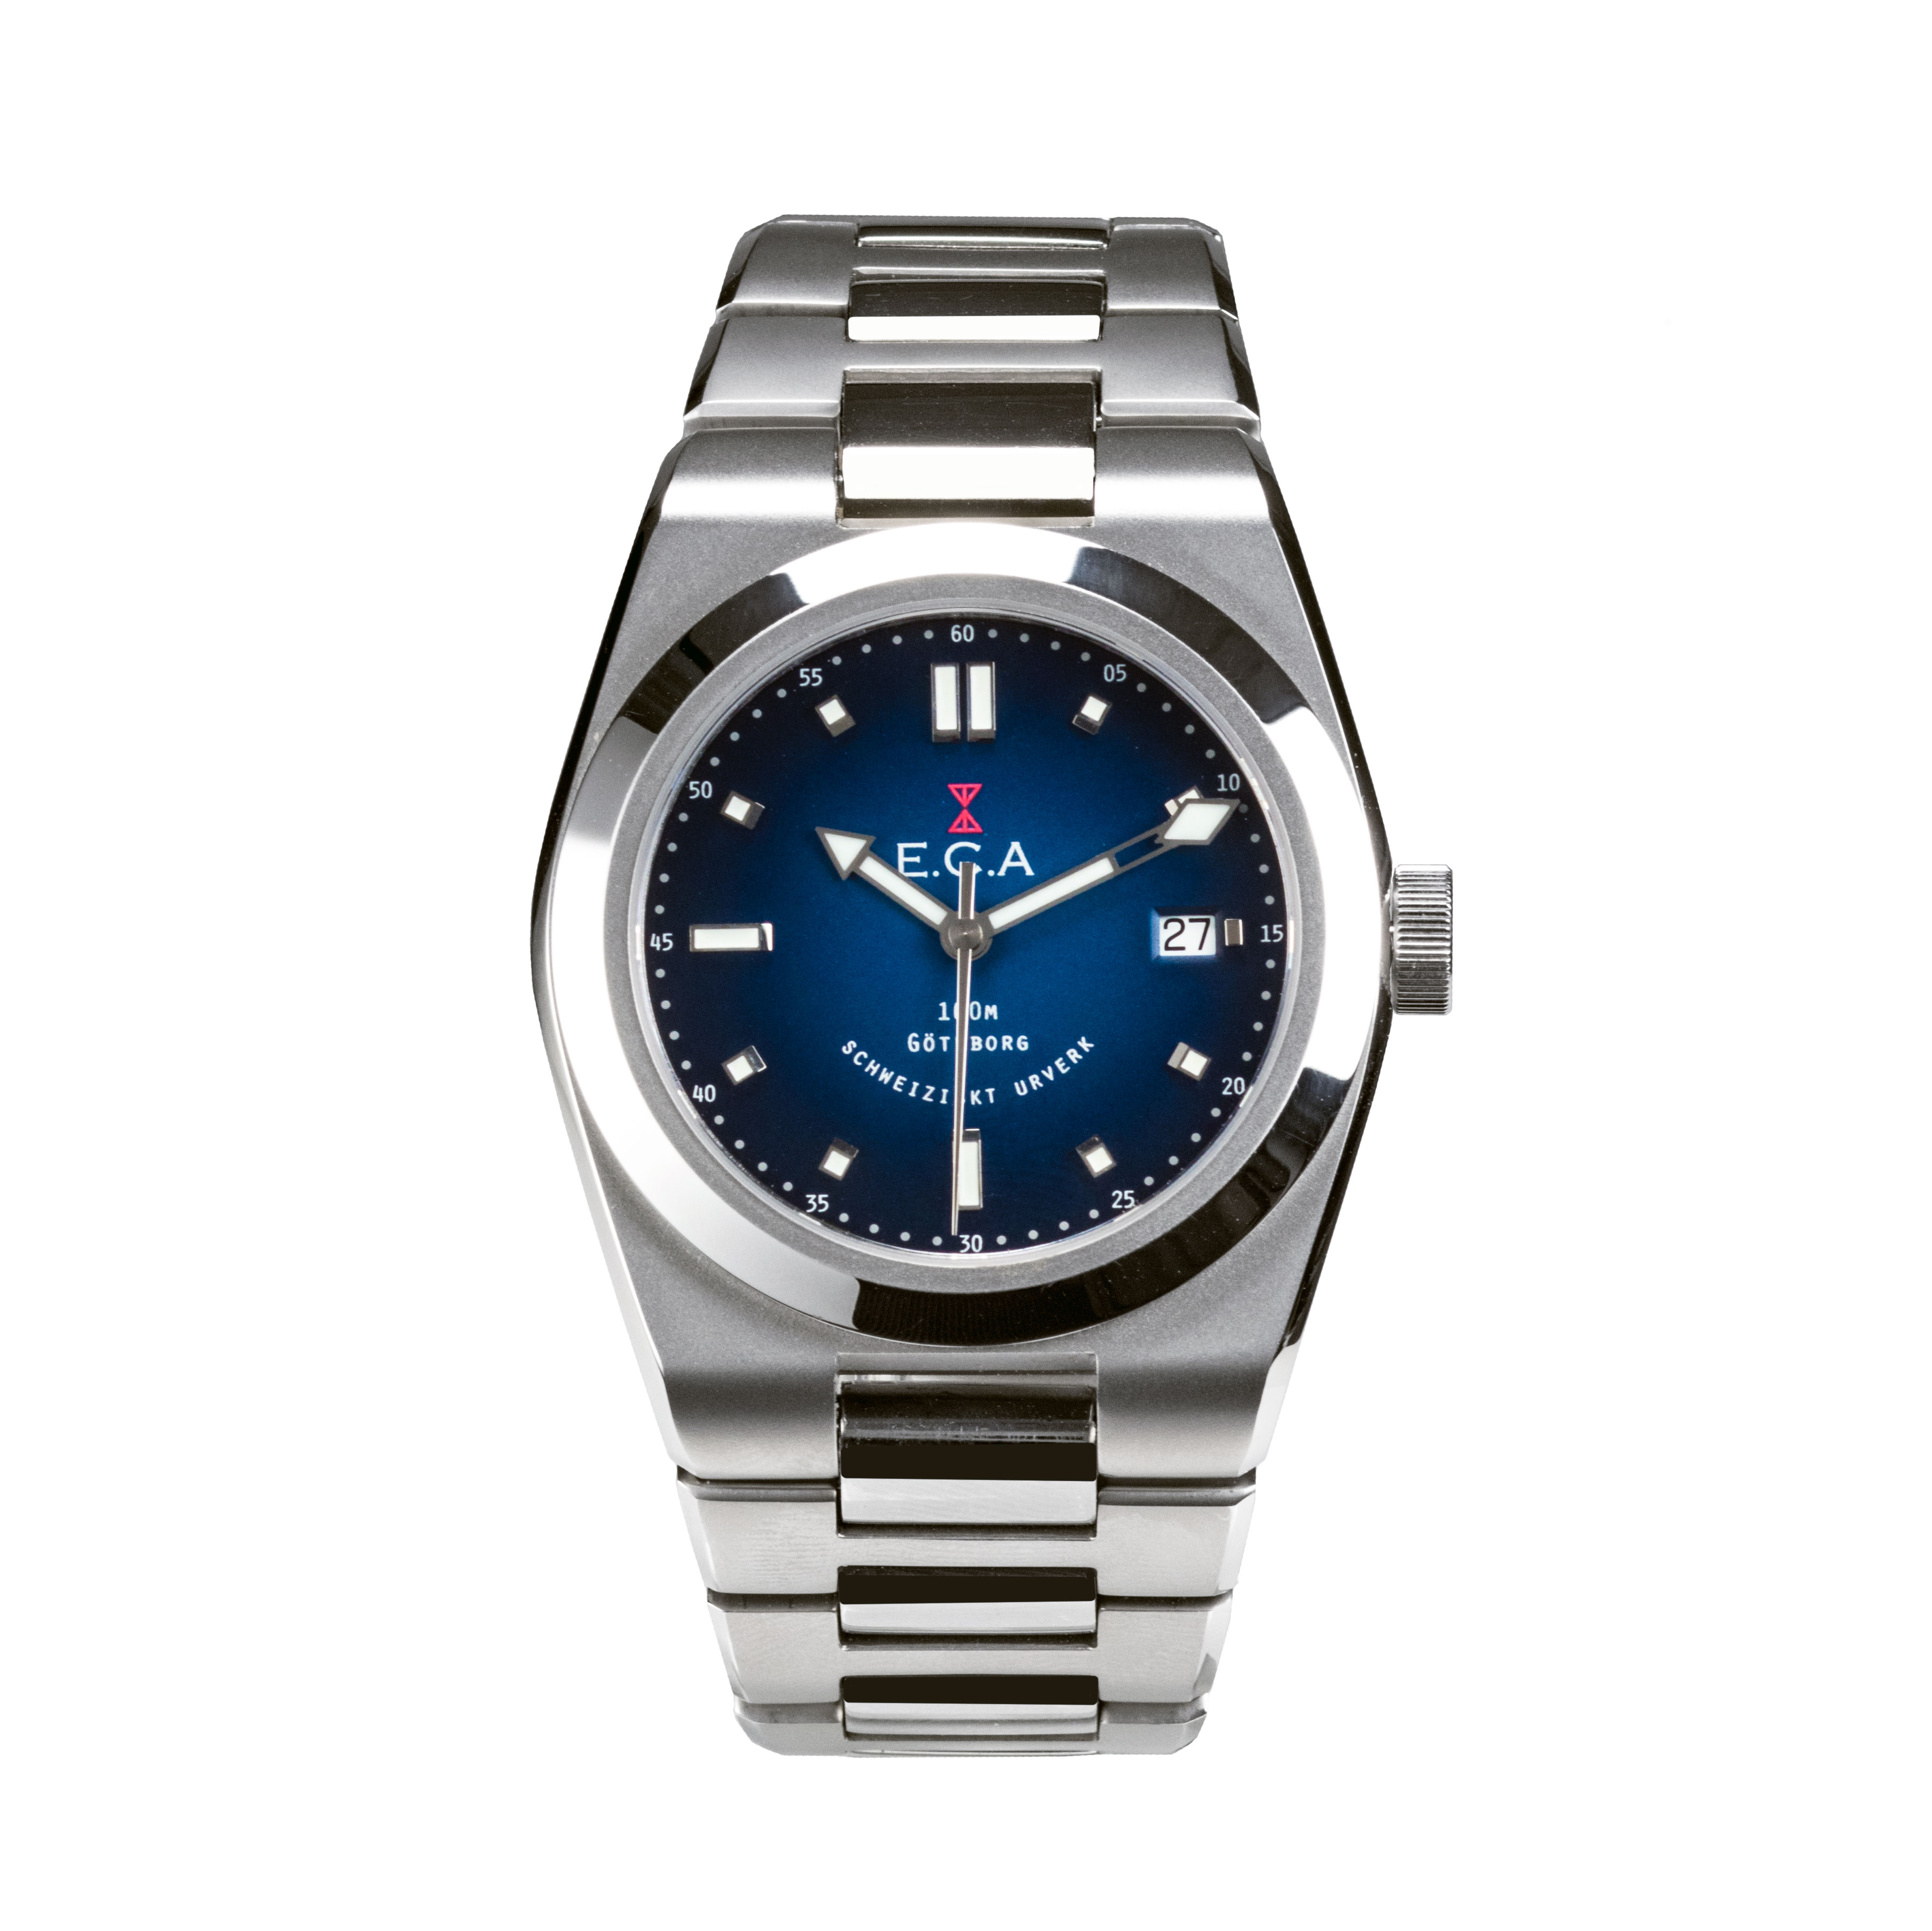 Calypso Watch Co E.C.Andersson - Premium